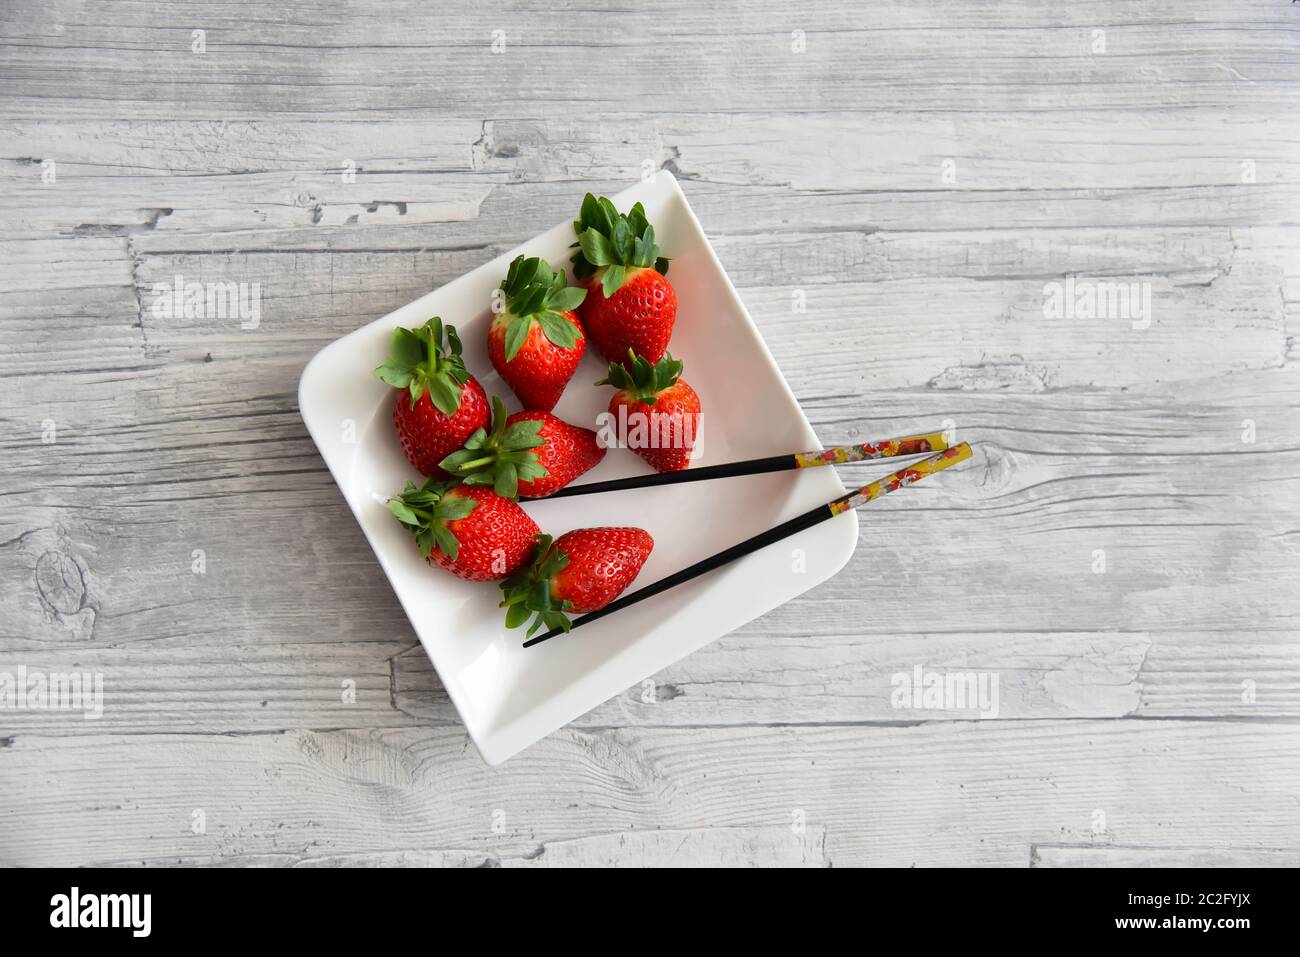 Saftige rote Erdbeeren mit grünen Blättern auf einem weißen Teller mit Essstäbchen. Holztisch Hintergrund. Stockfoto